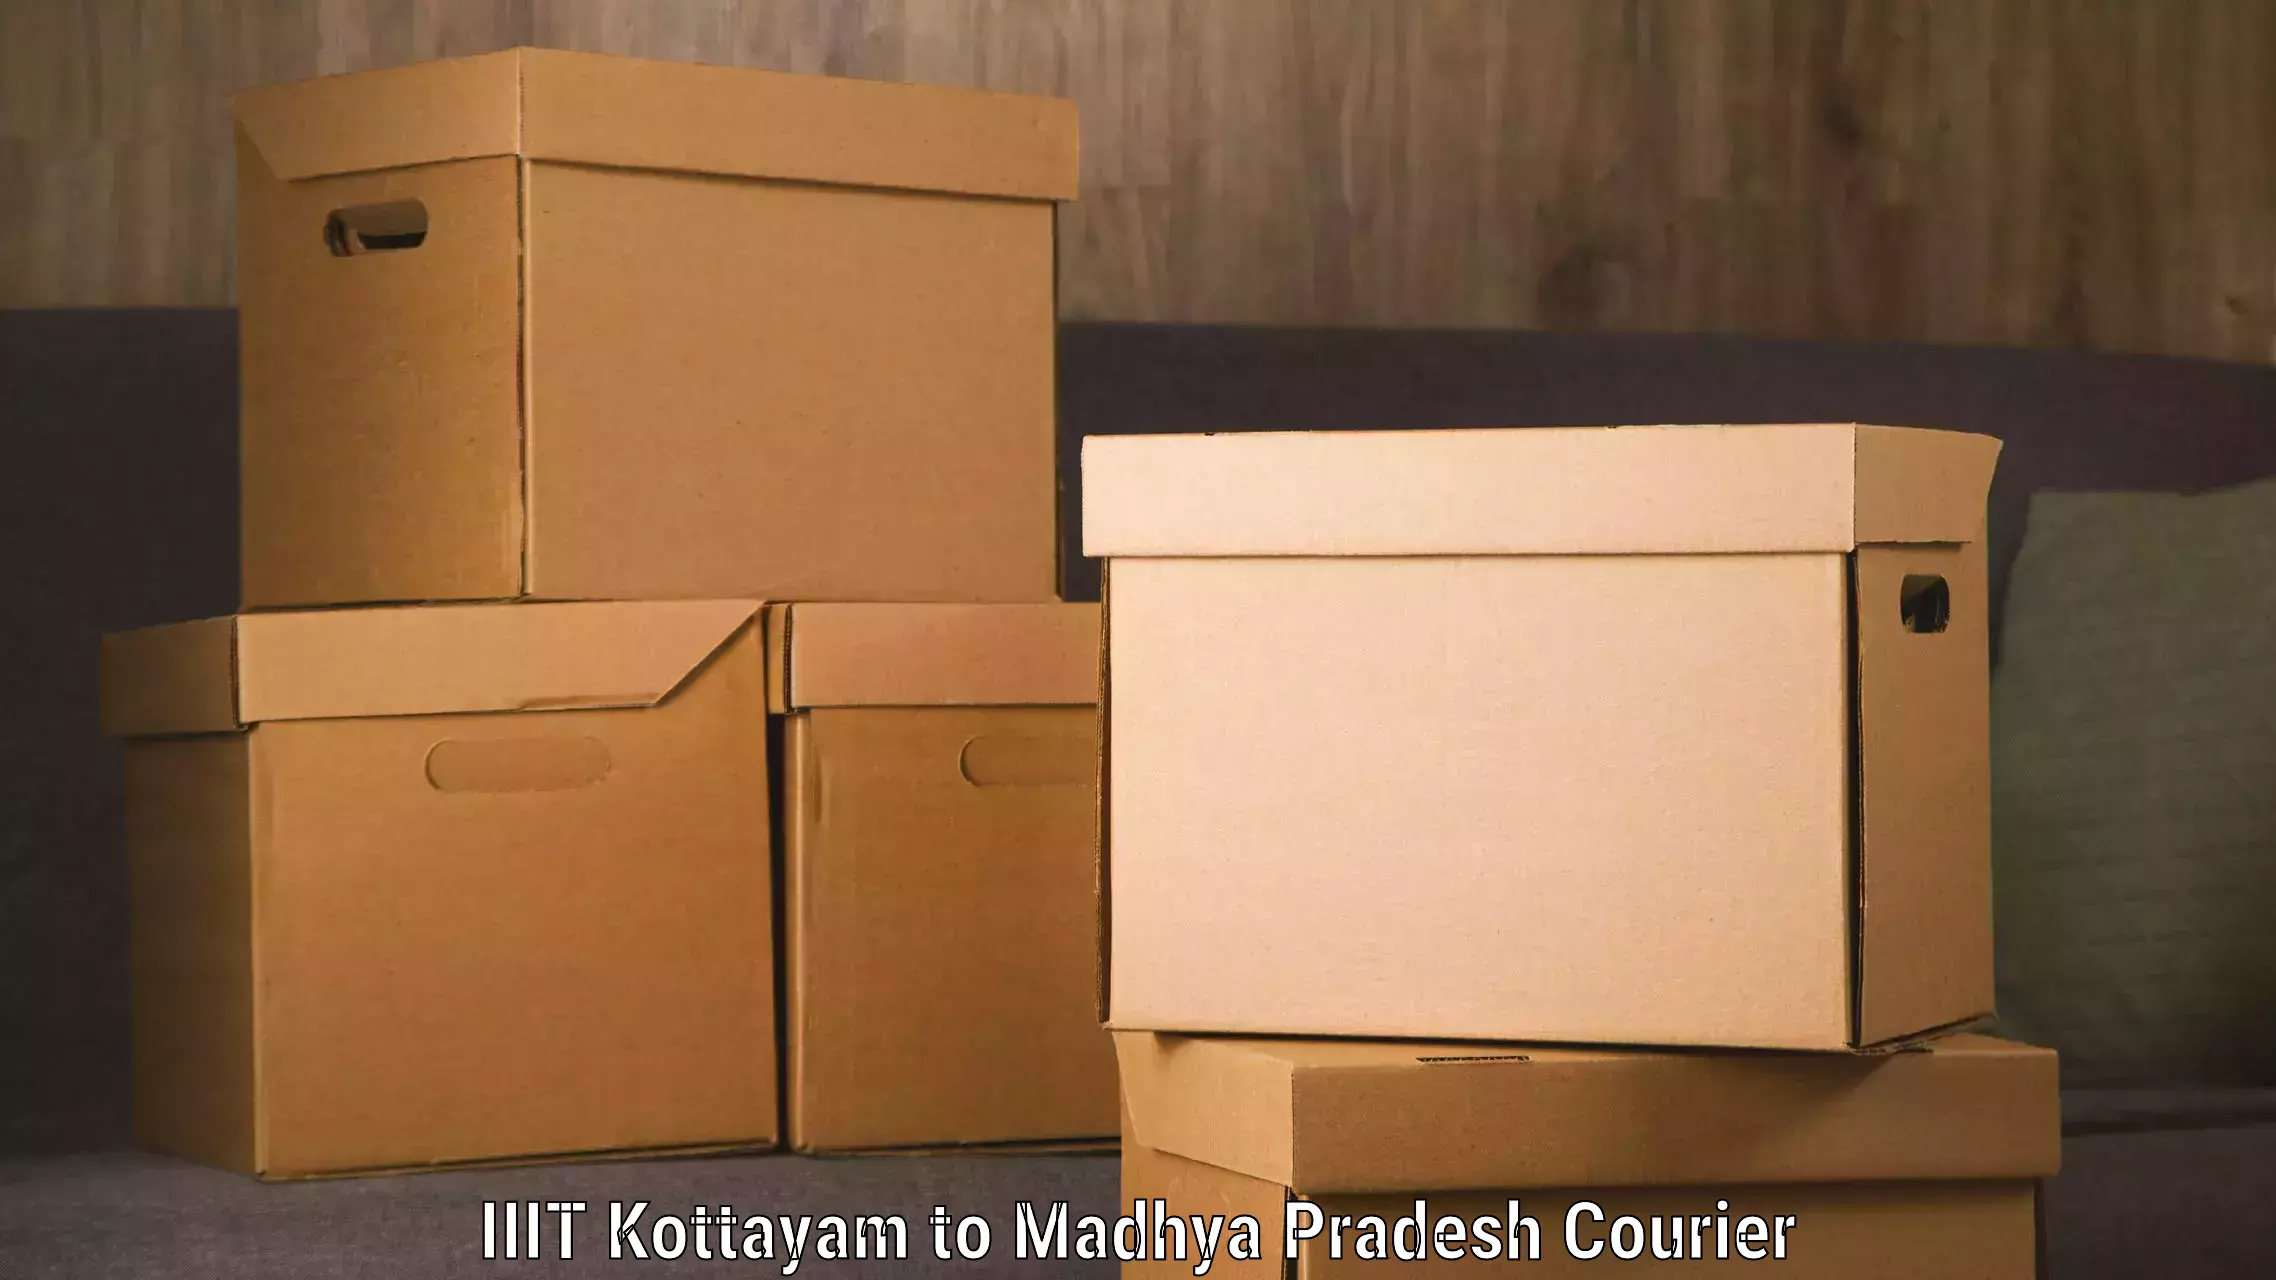 Subscription-based courier IIIT Kottayam to Multai